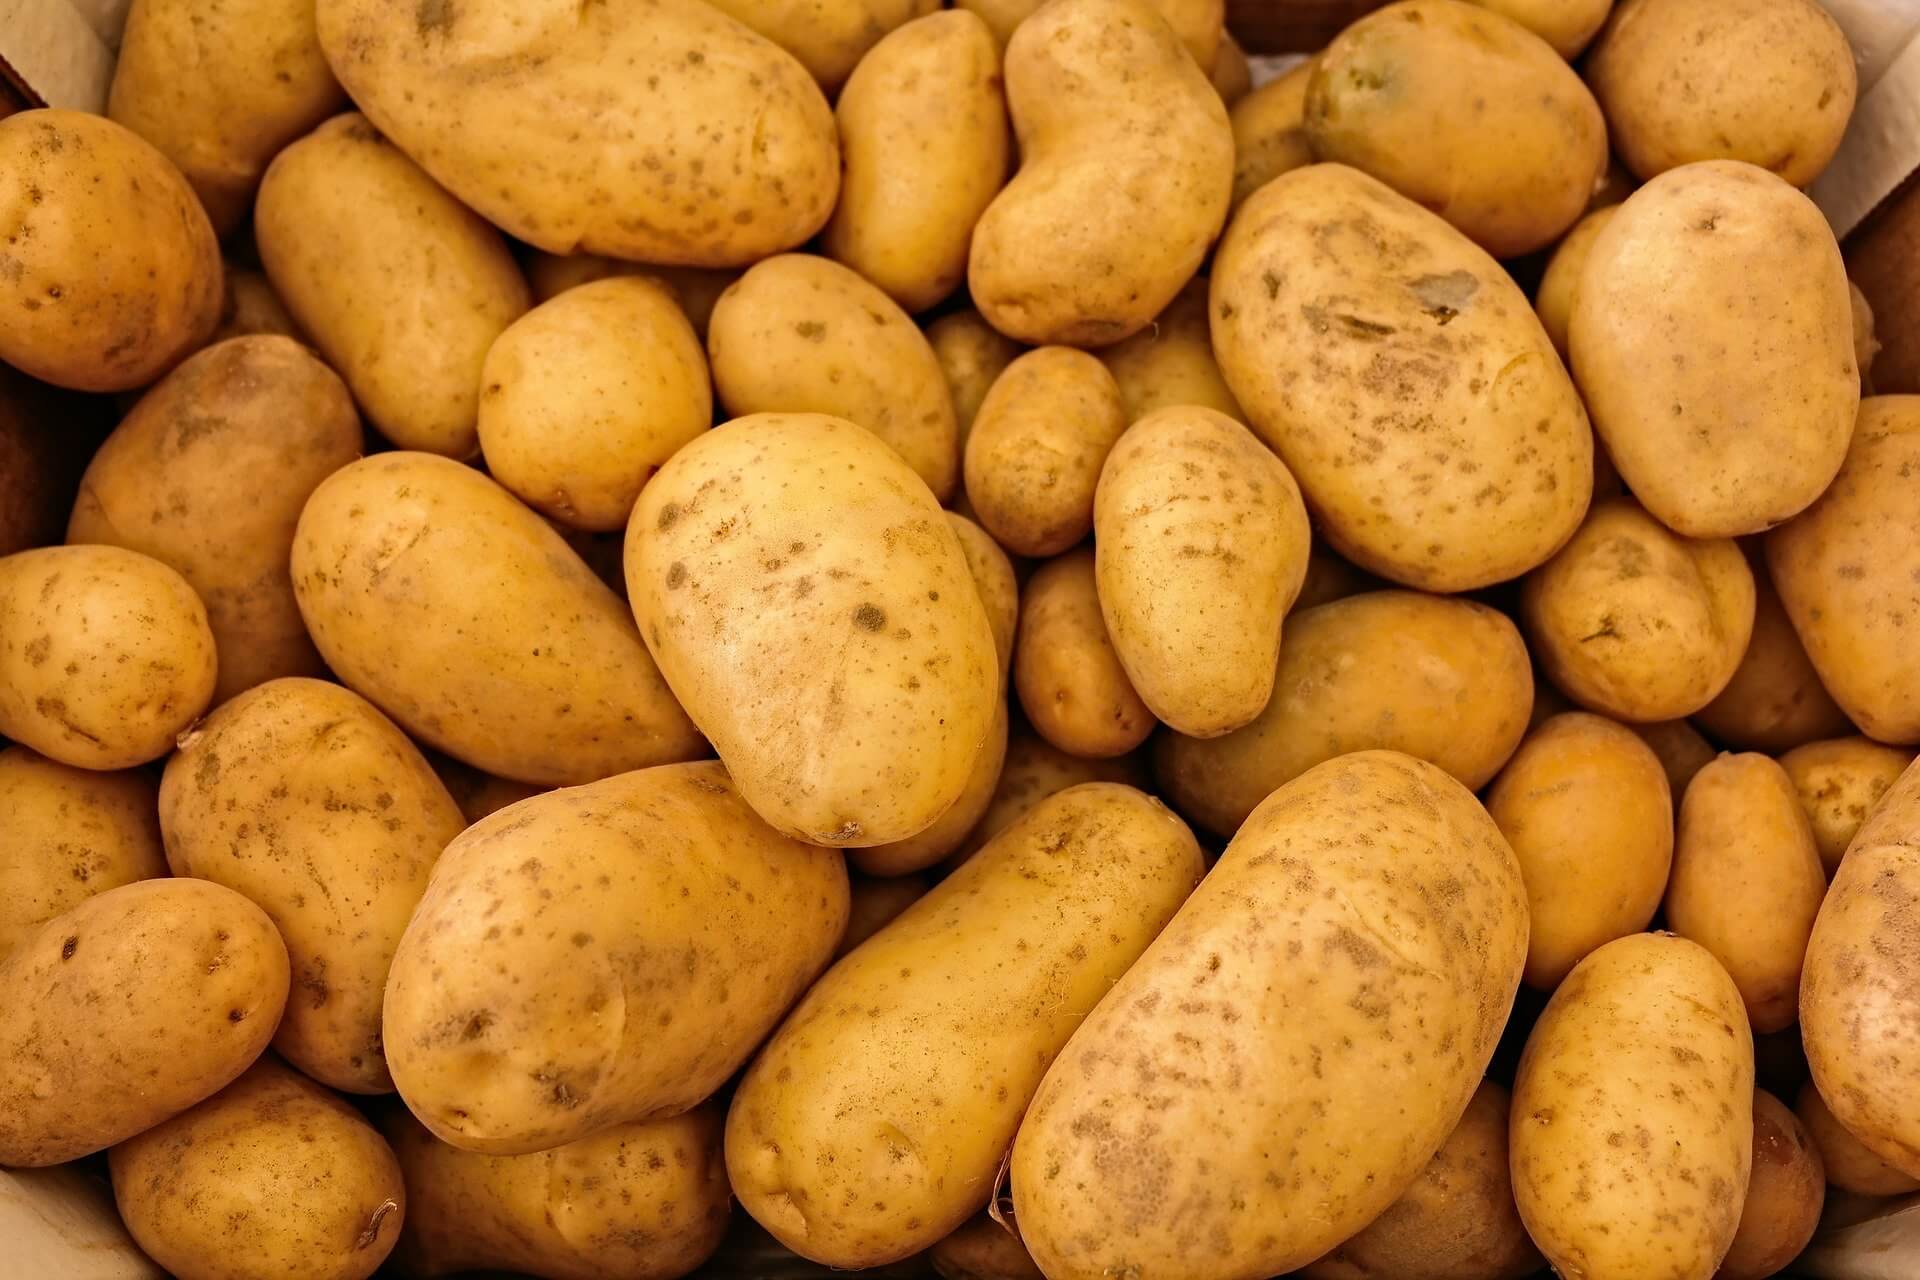 Аграрии предупреждают о росте цен на картофель